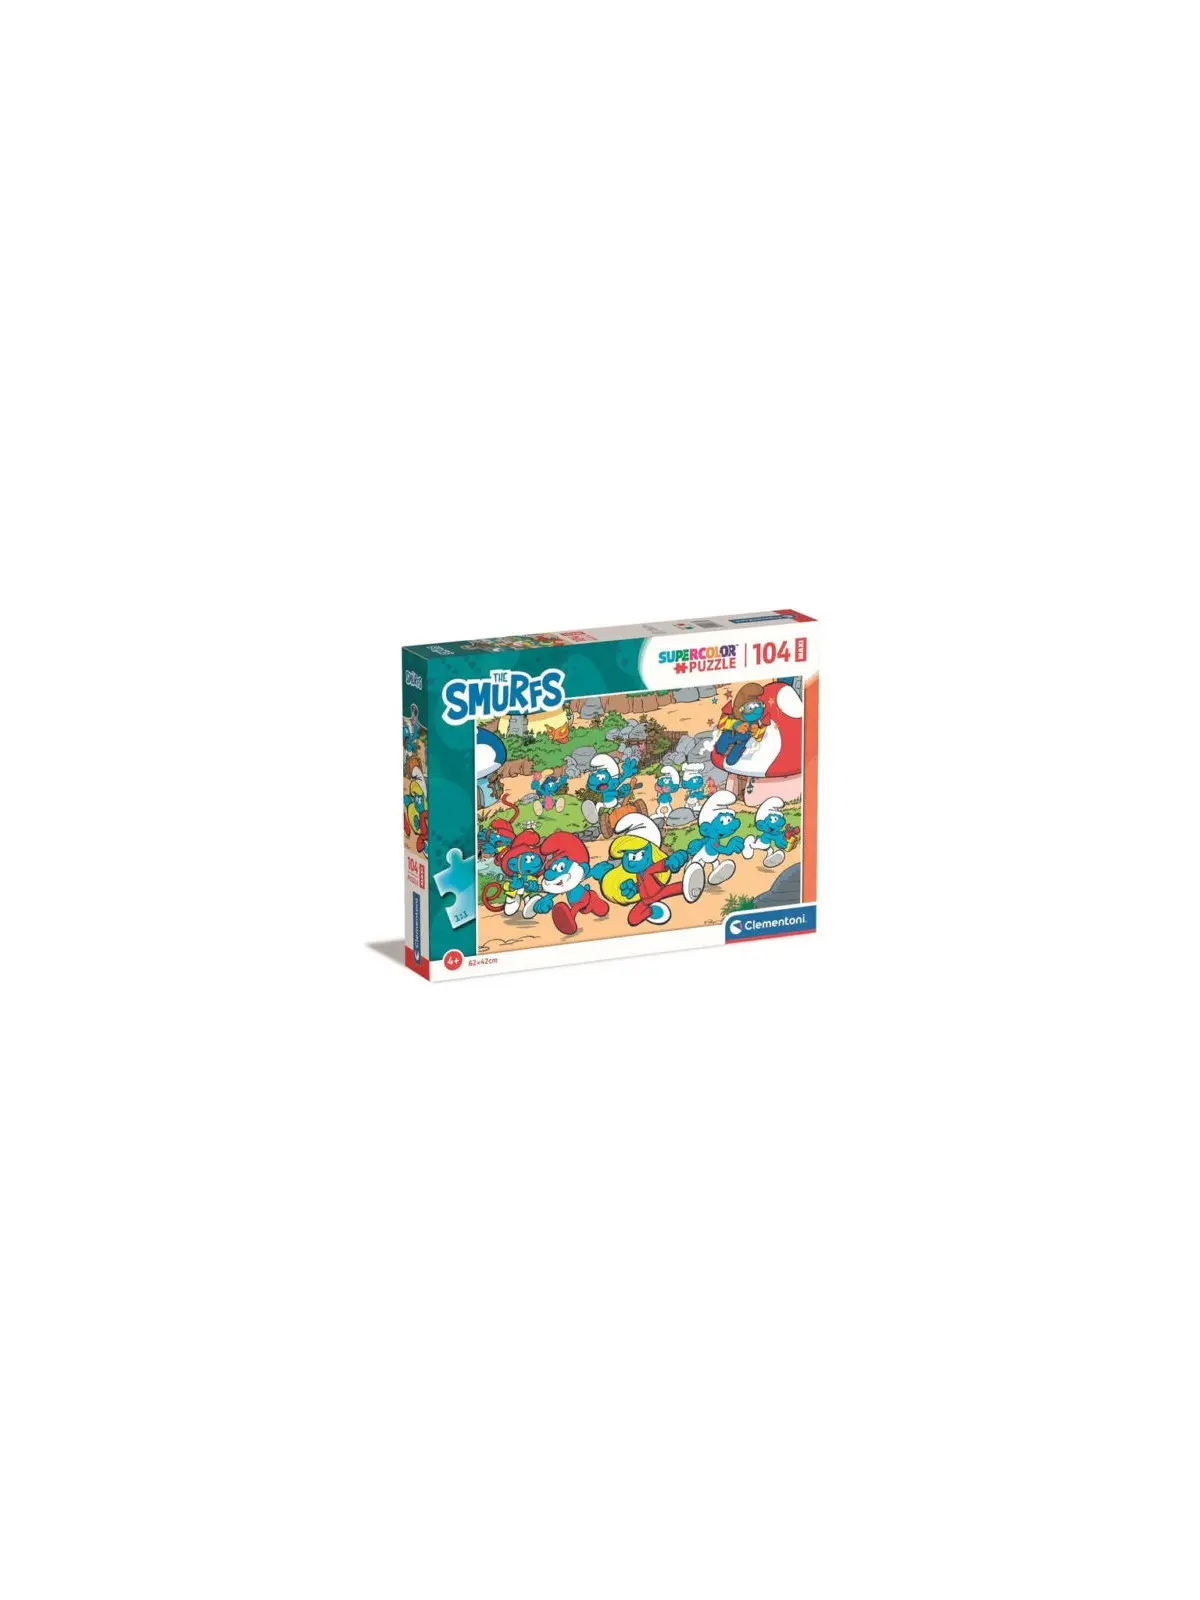 Super Color Maxi Puzzle The Smurfs 104 pcs